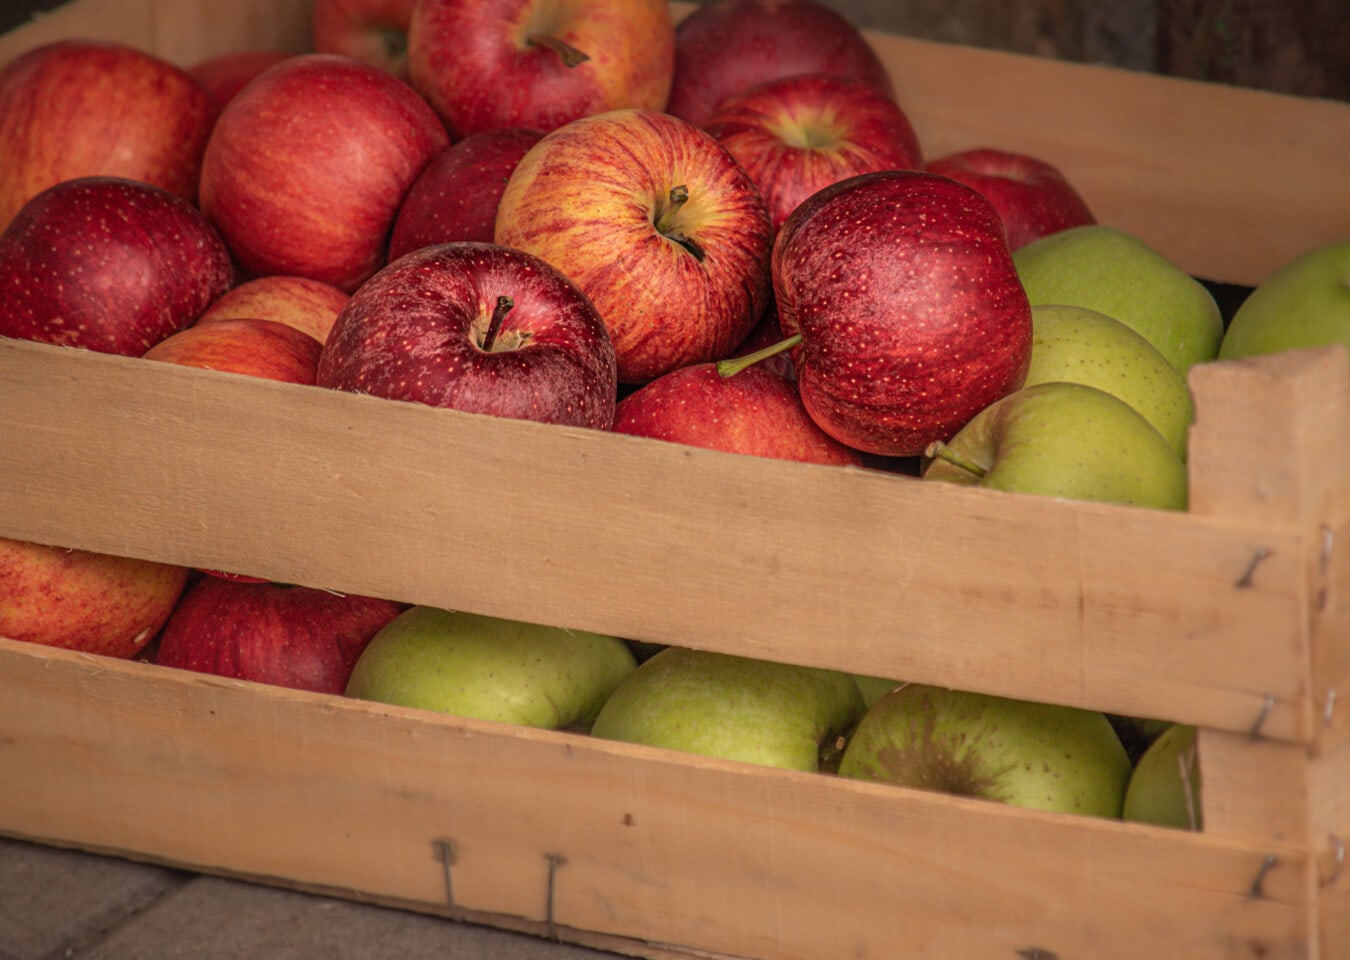 jabłka, organiczne, słodkie, jabłko, zielony, ciemny czerwony, dojrzałe owoce, świeży, pyszne, jedzenie